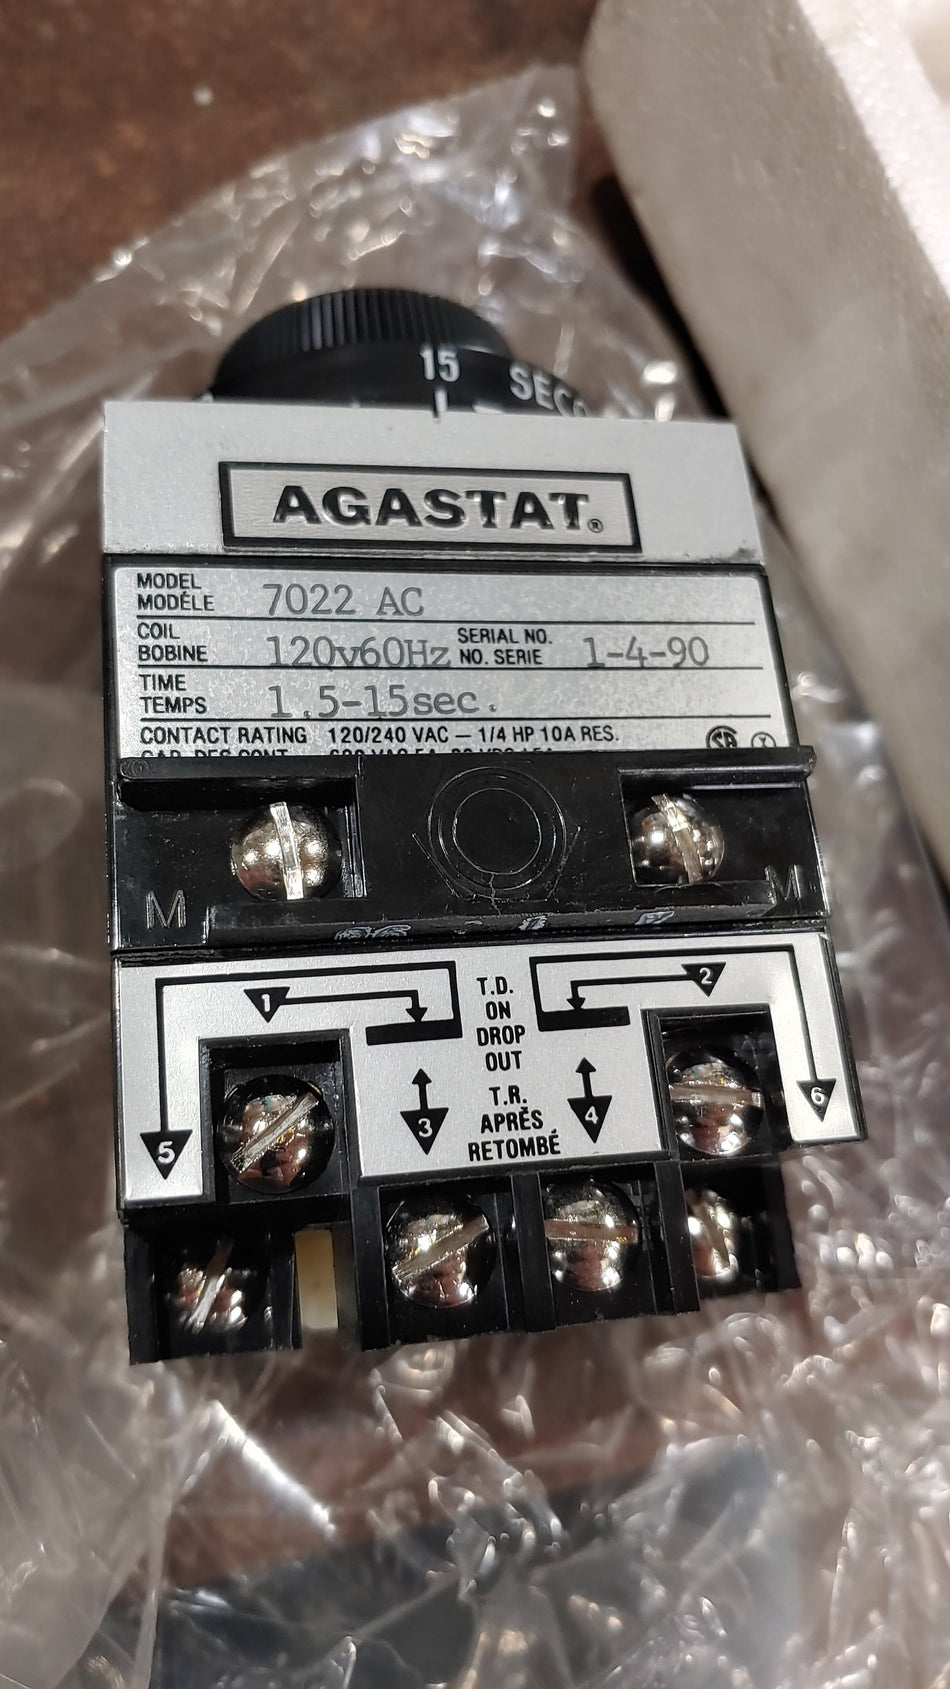 Agastat Timing Relay Model: 7022 AC Coil:120V 60Hz Time: 1.5-15Sec